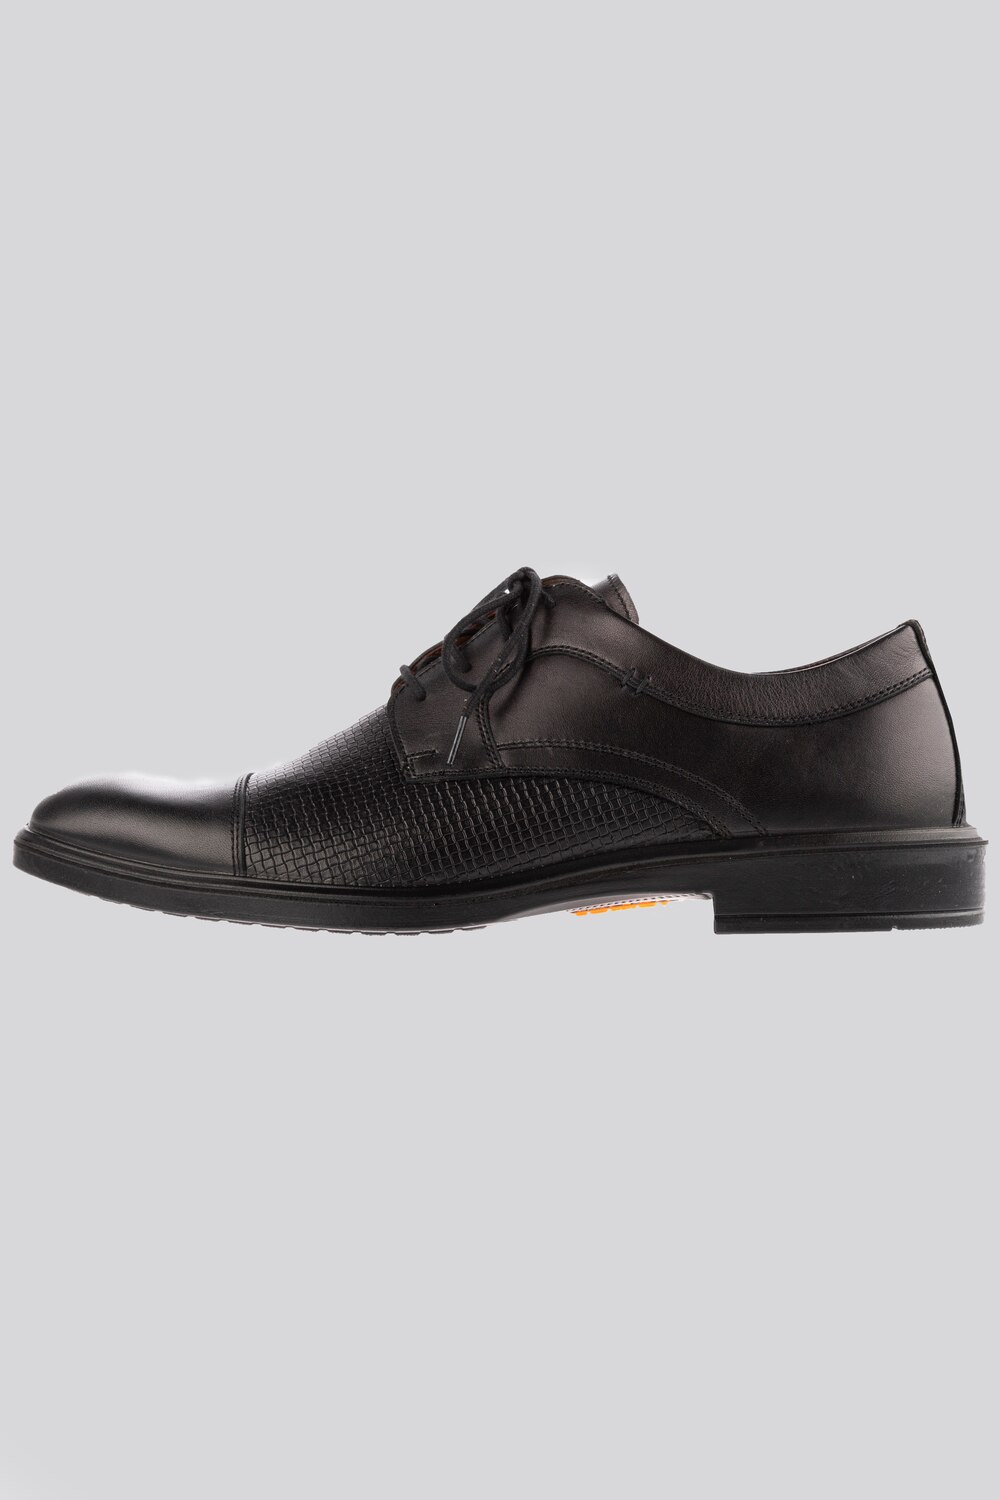 Grote Maten business schoenen, Heren, zwart, Maat: 42, Leer, JP1880